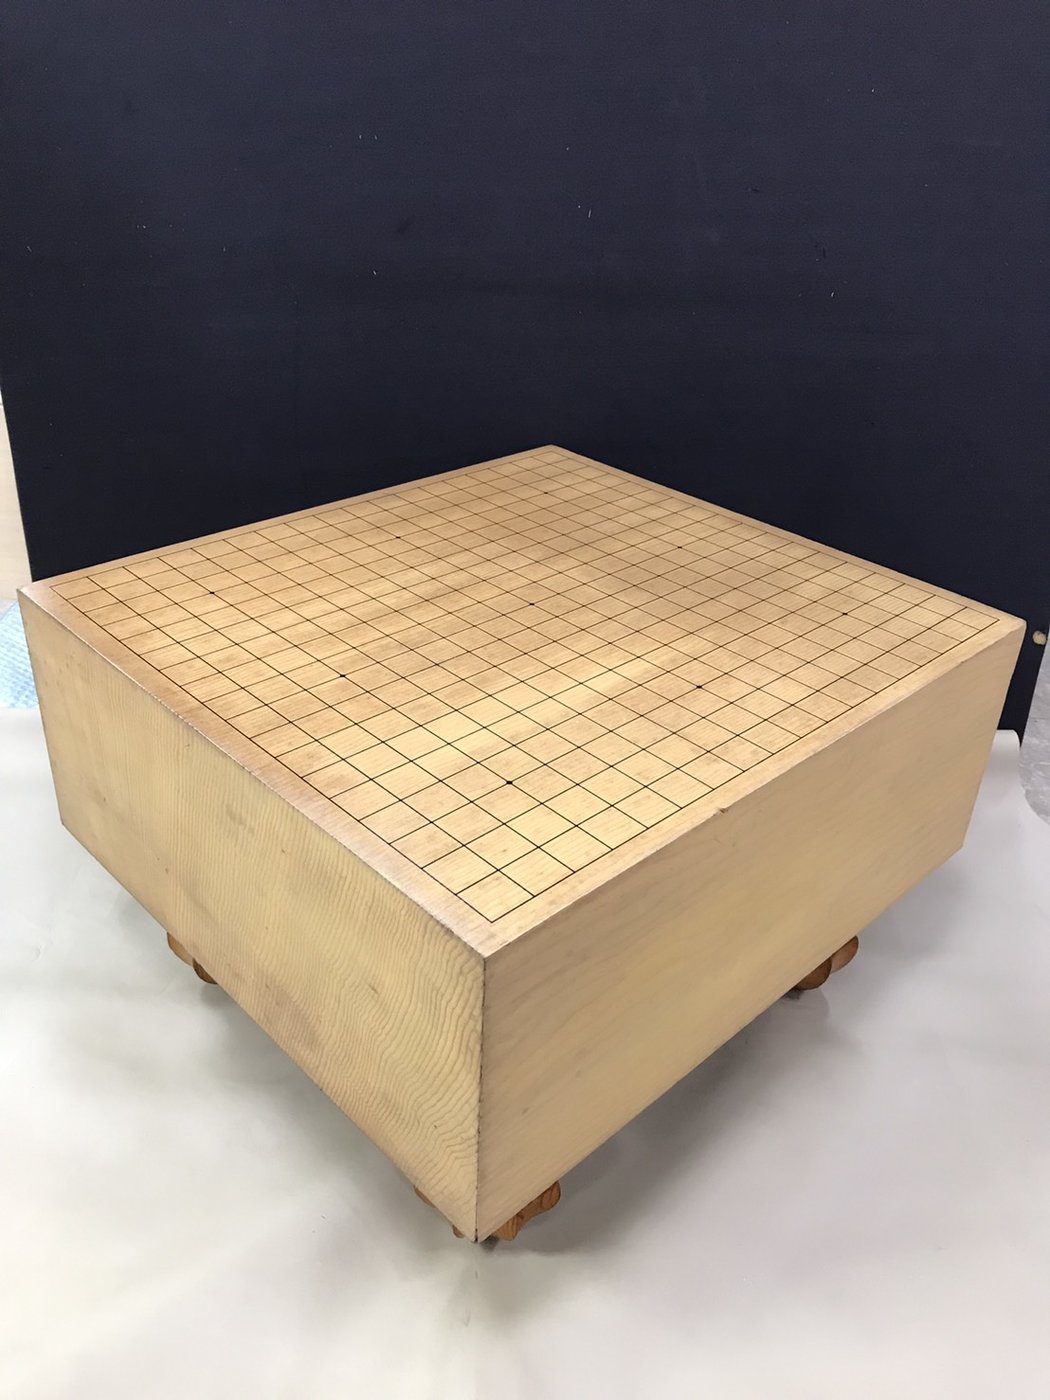 【JP.com】日本中古木製圍棋棋盤囲碁盤6吋棋盤厚17.7cm 19路盤 